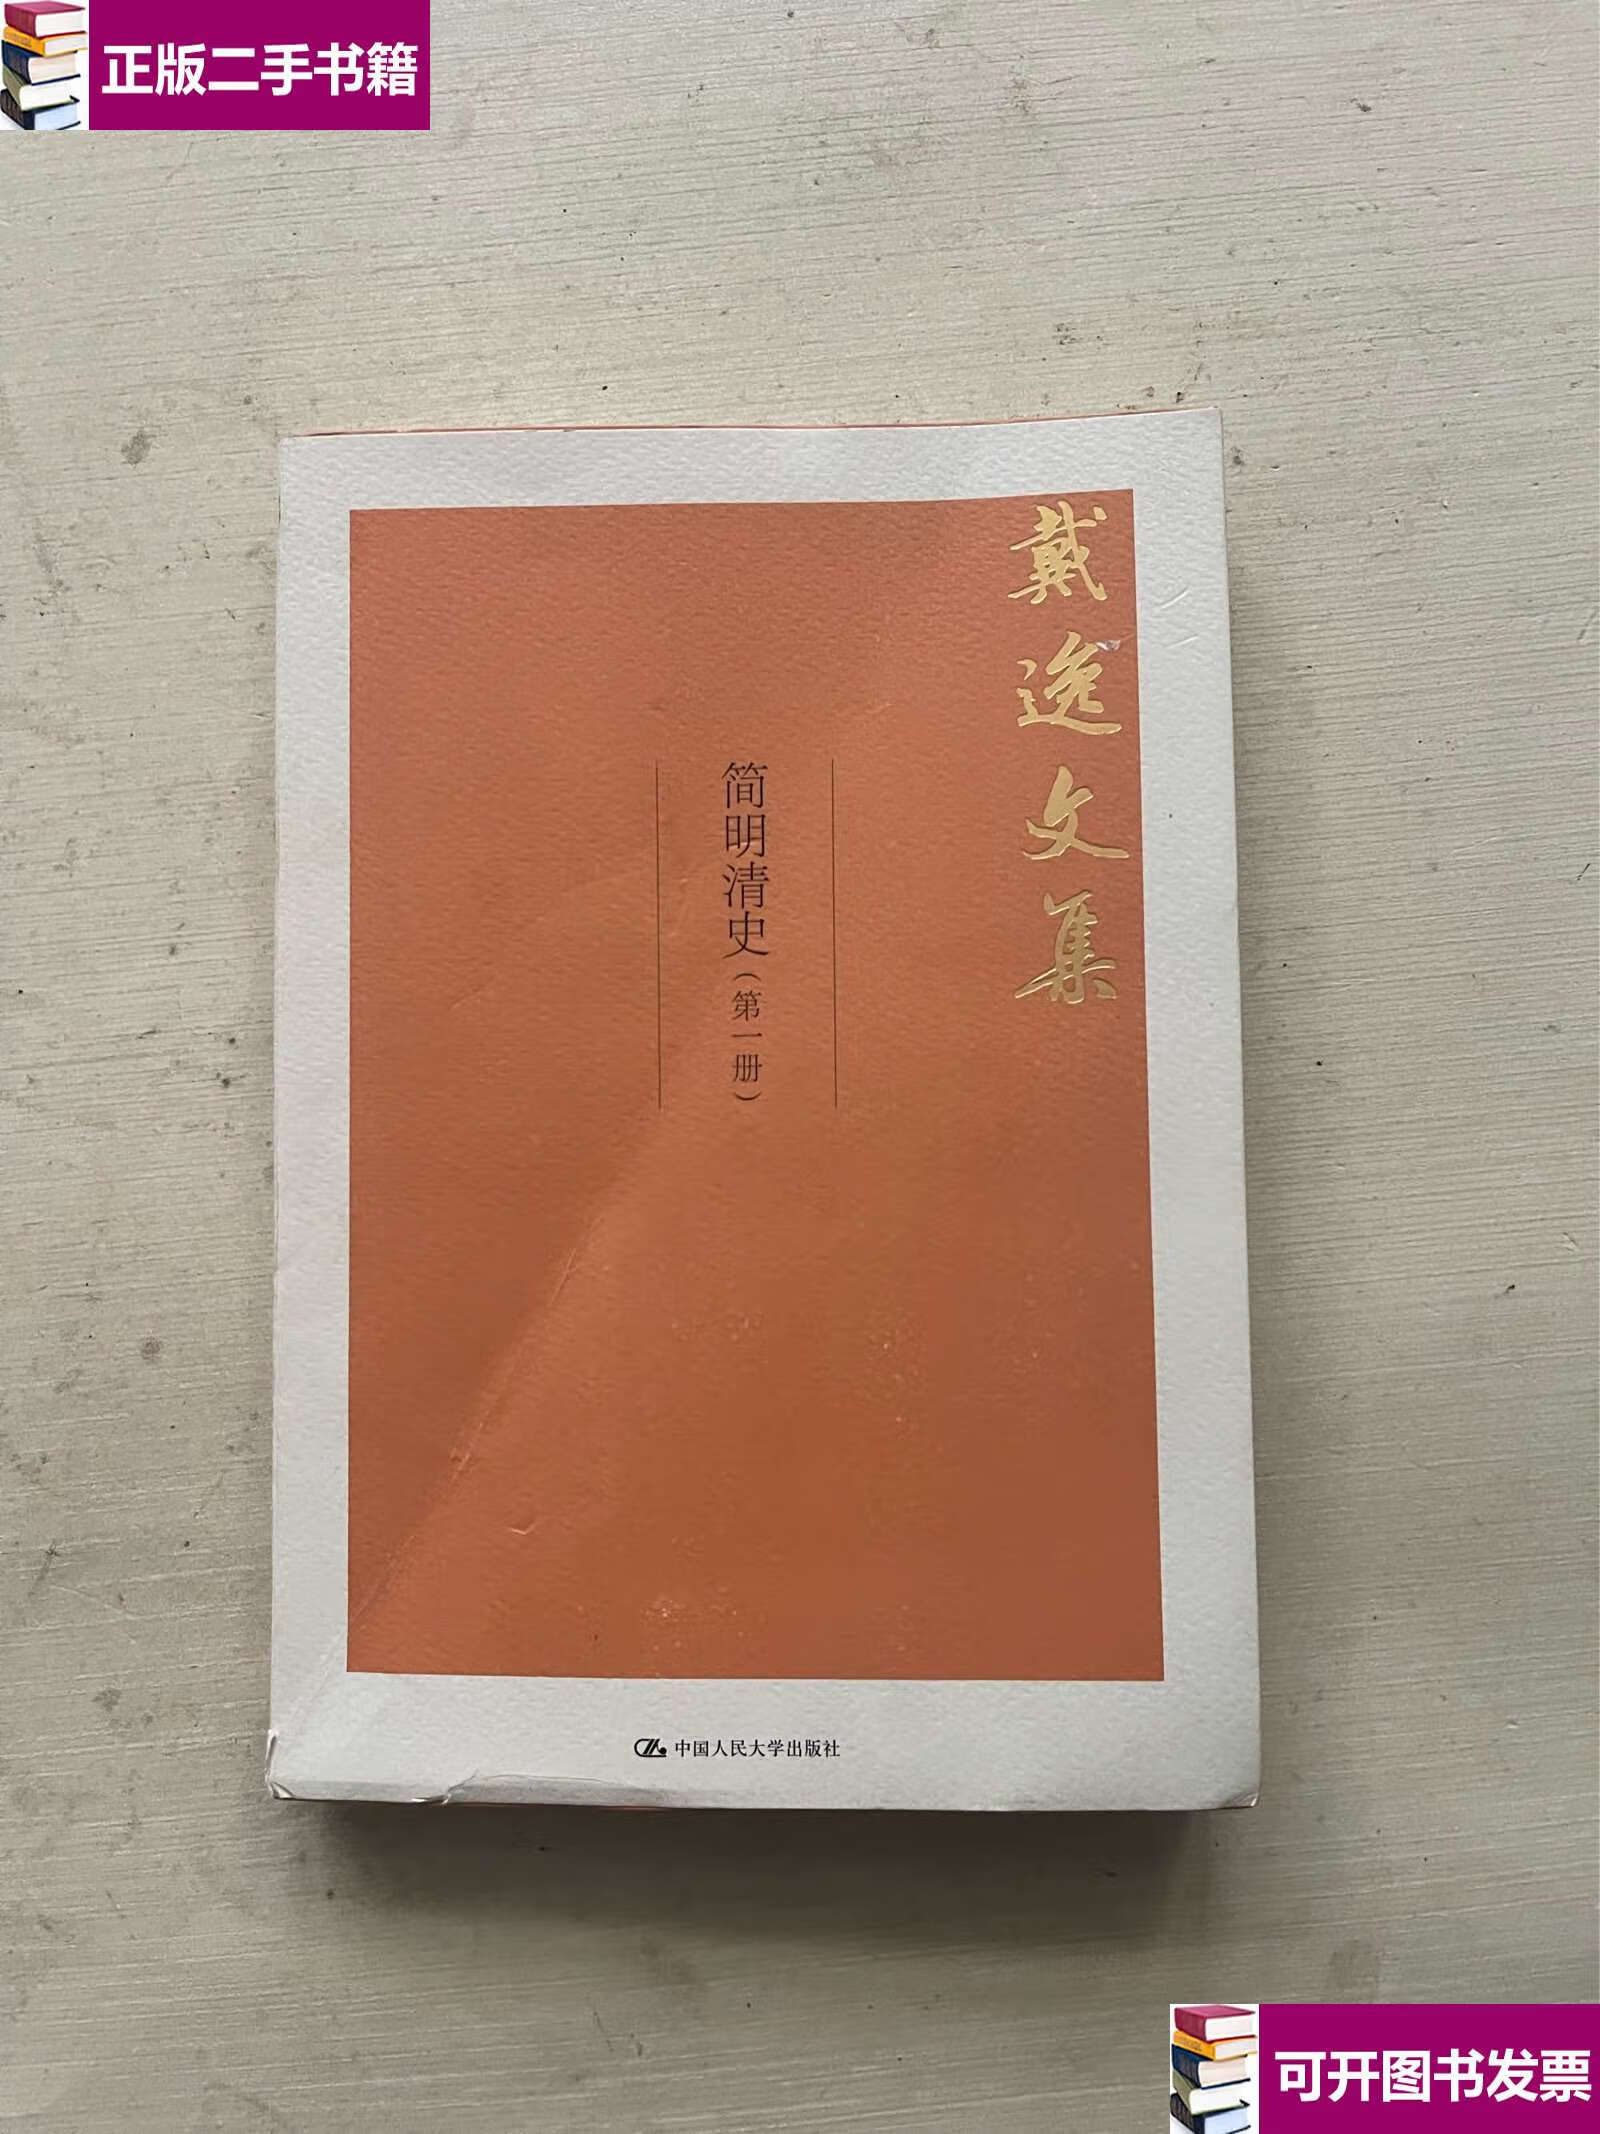 【二手9成新】简明清史(第1册)单本 /戴逸 中国人民大学